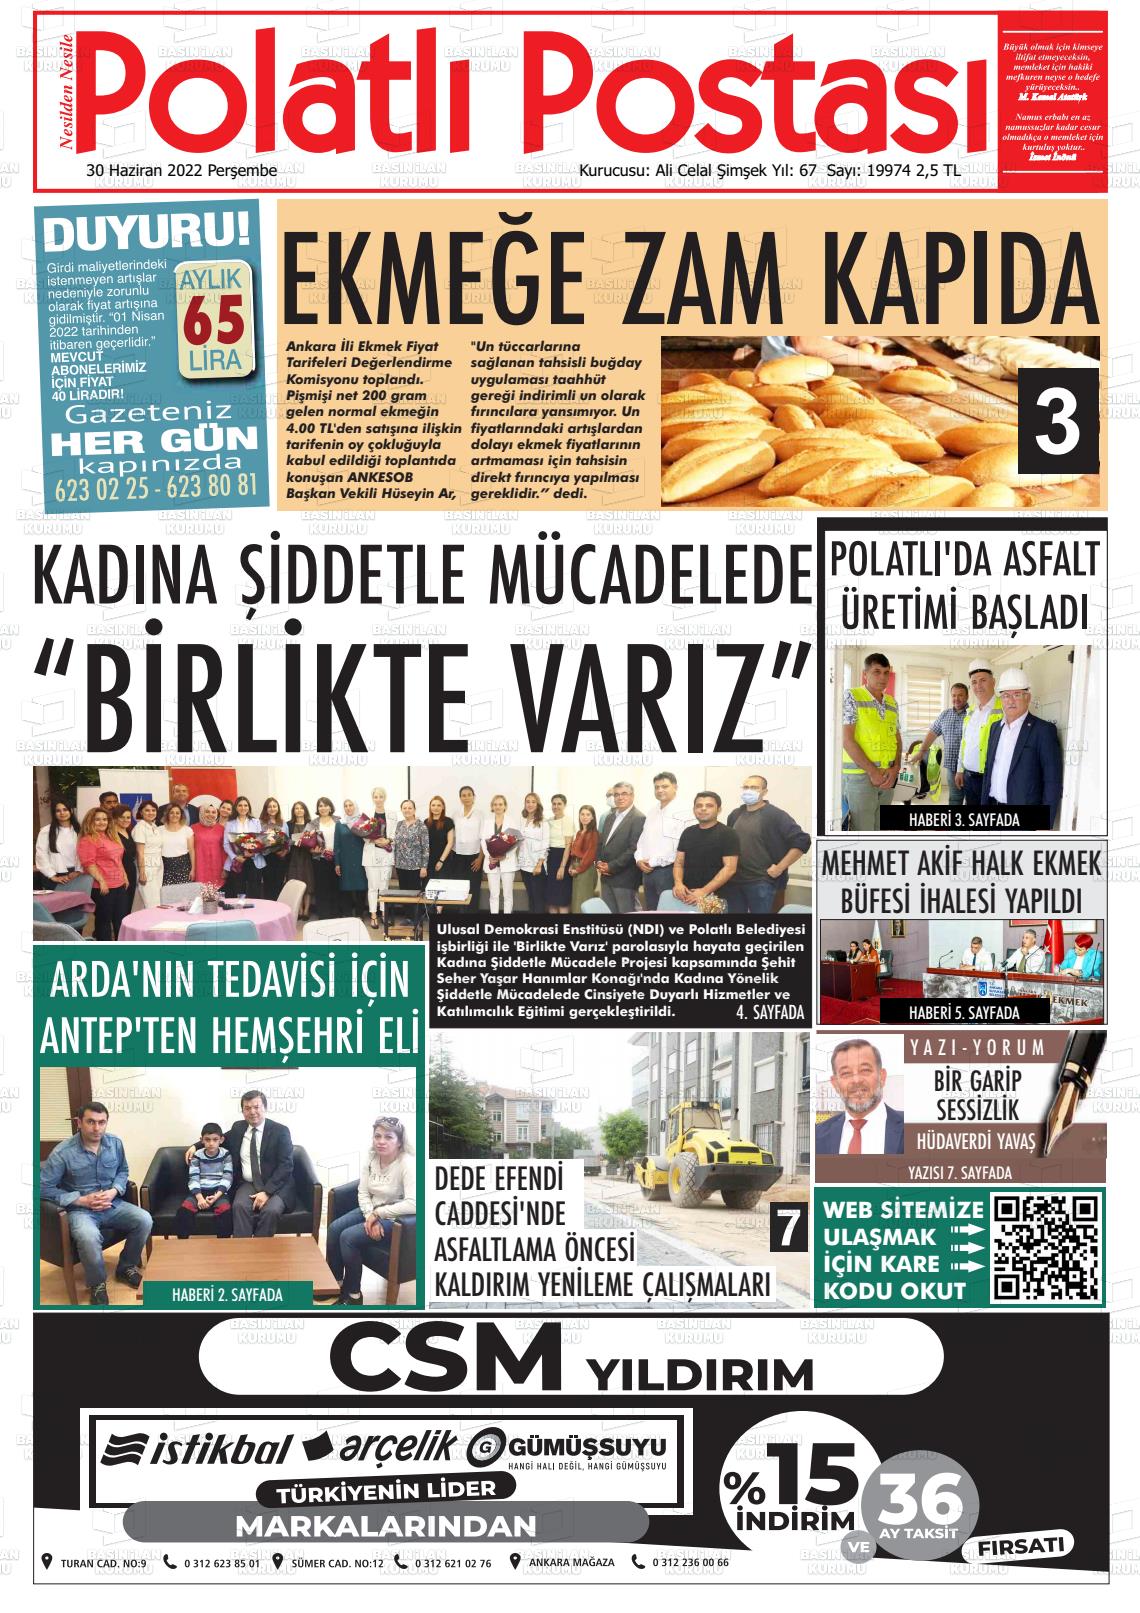 30 Haziran 2022 Polatlı Postası Gazete Manşeti